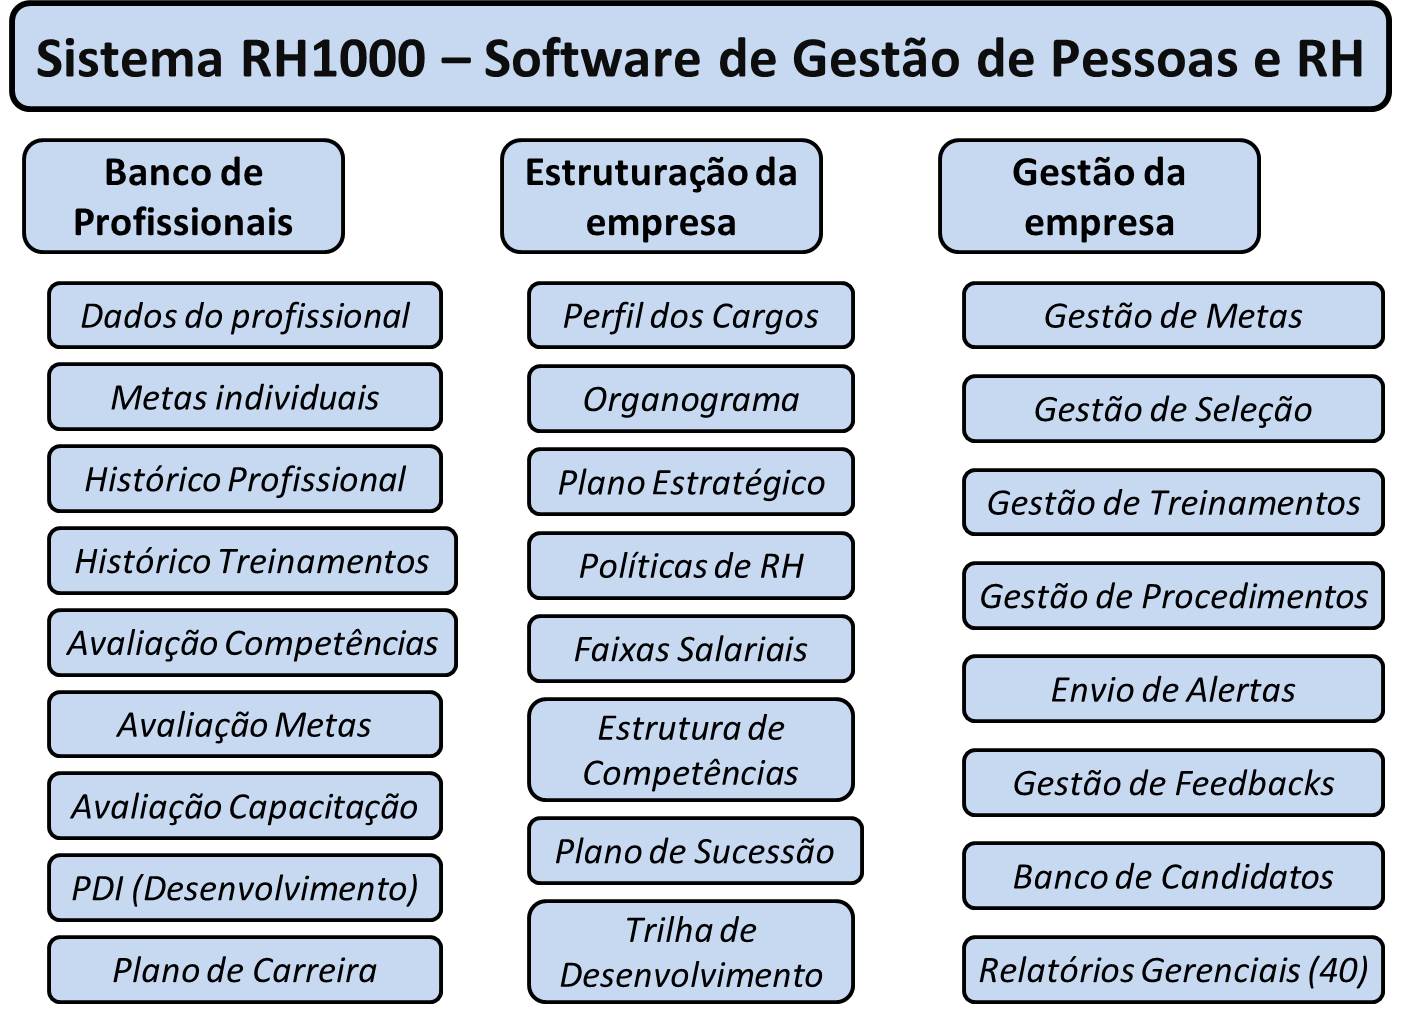 Gráfico - Processos e aplicações práticas do Sistema RH1000